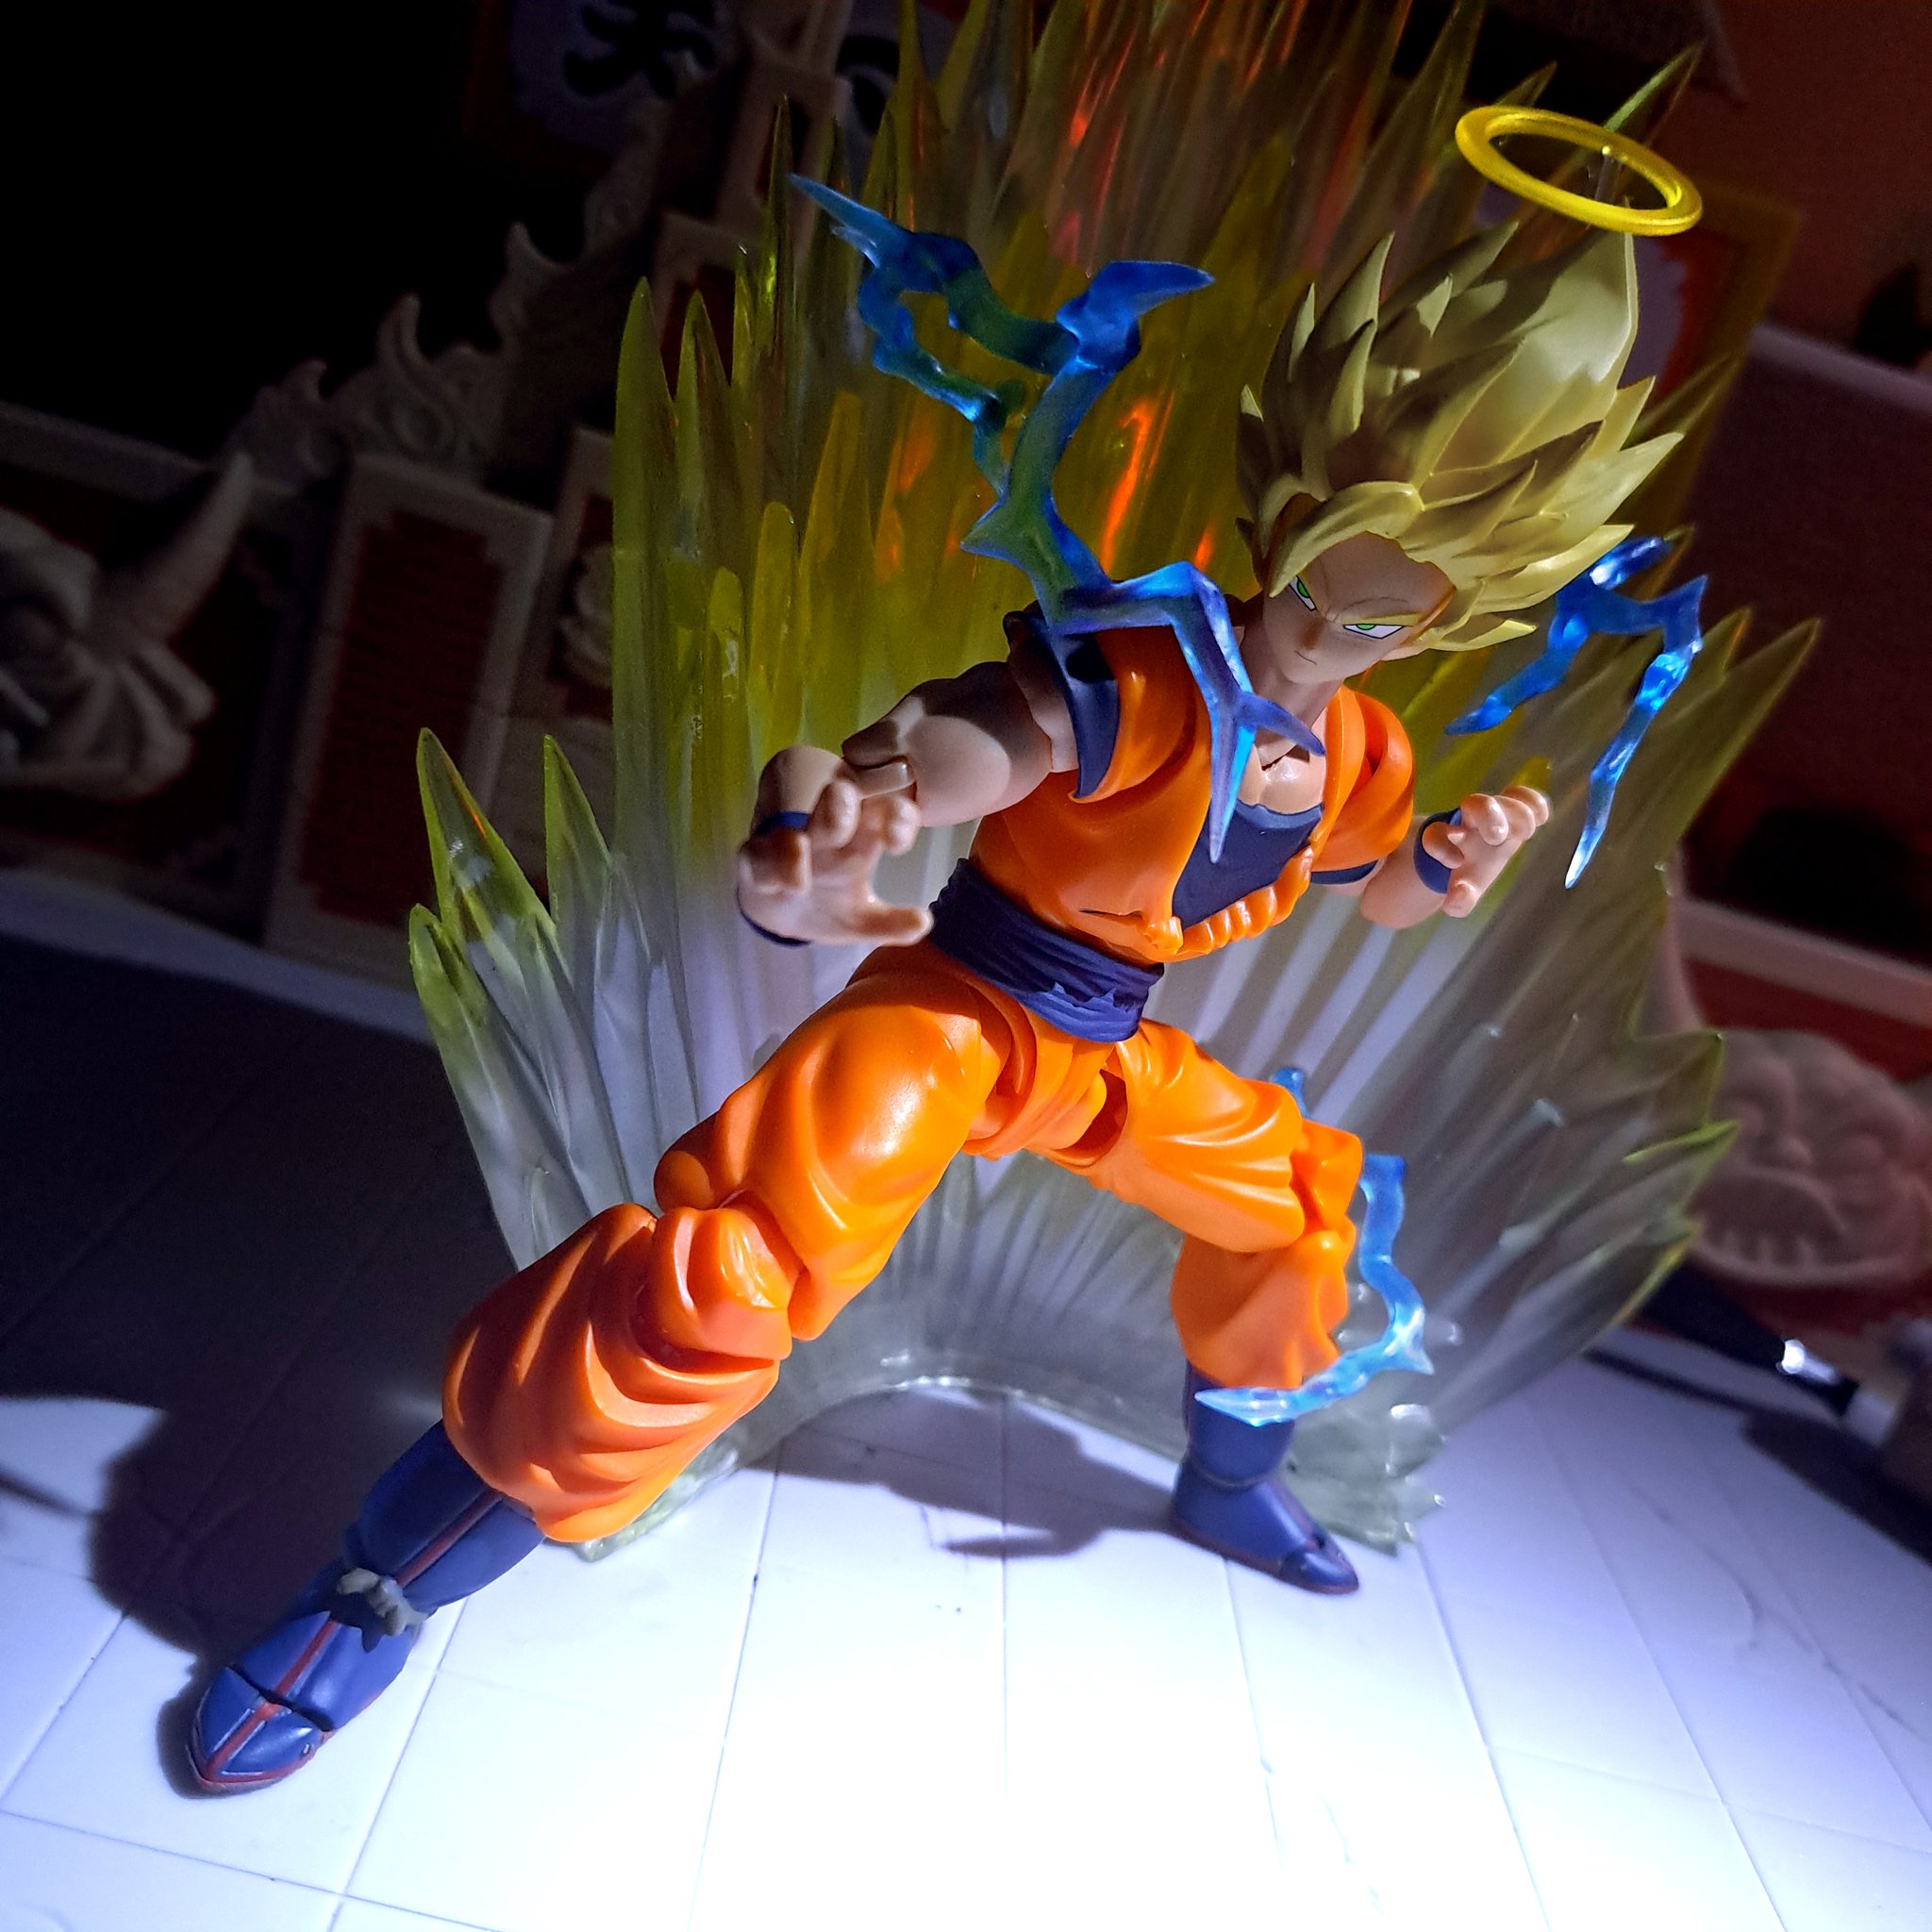 toy.budokai_ig on X: Demoniacal Fit SSJ2 Goku #dragonball